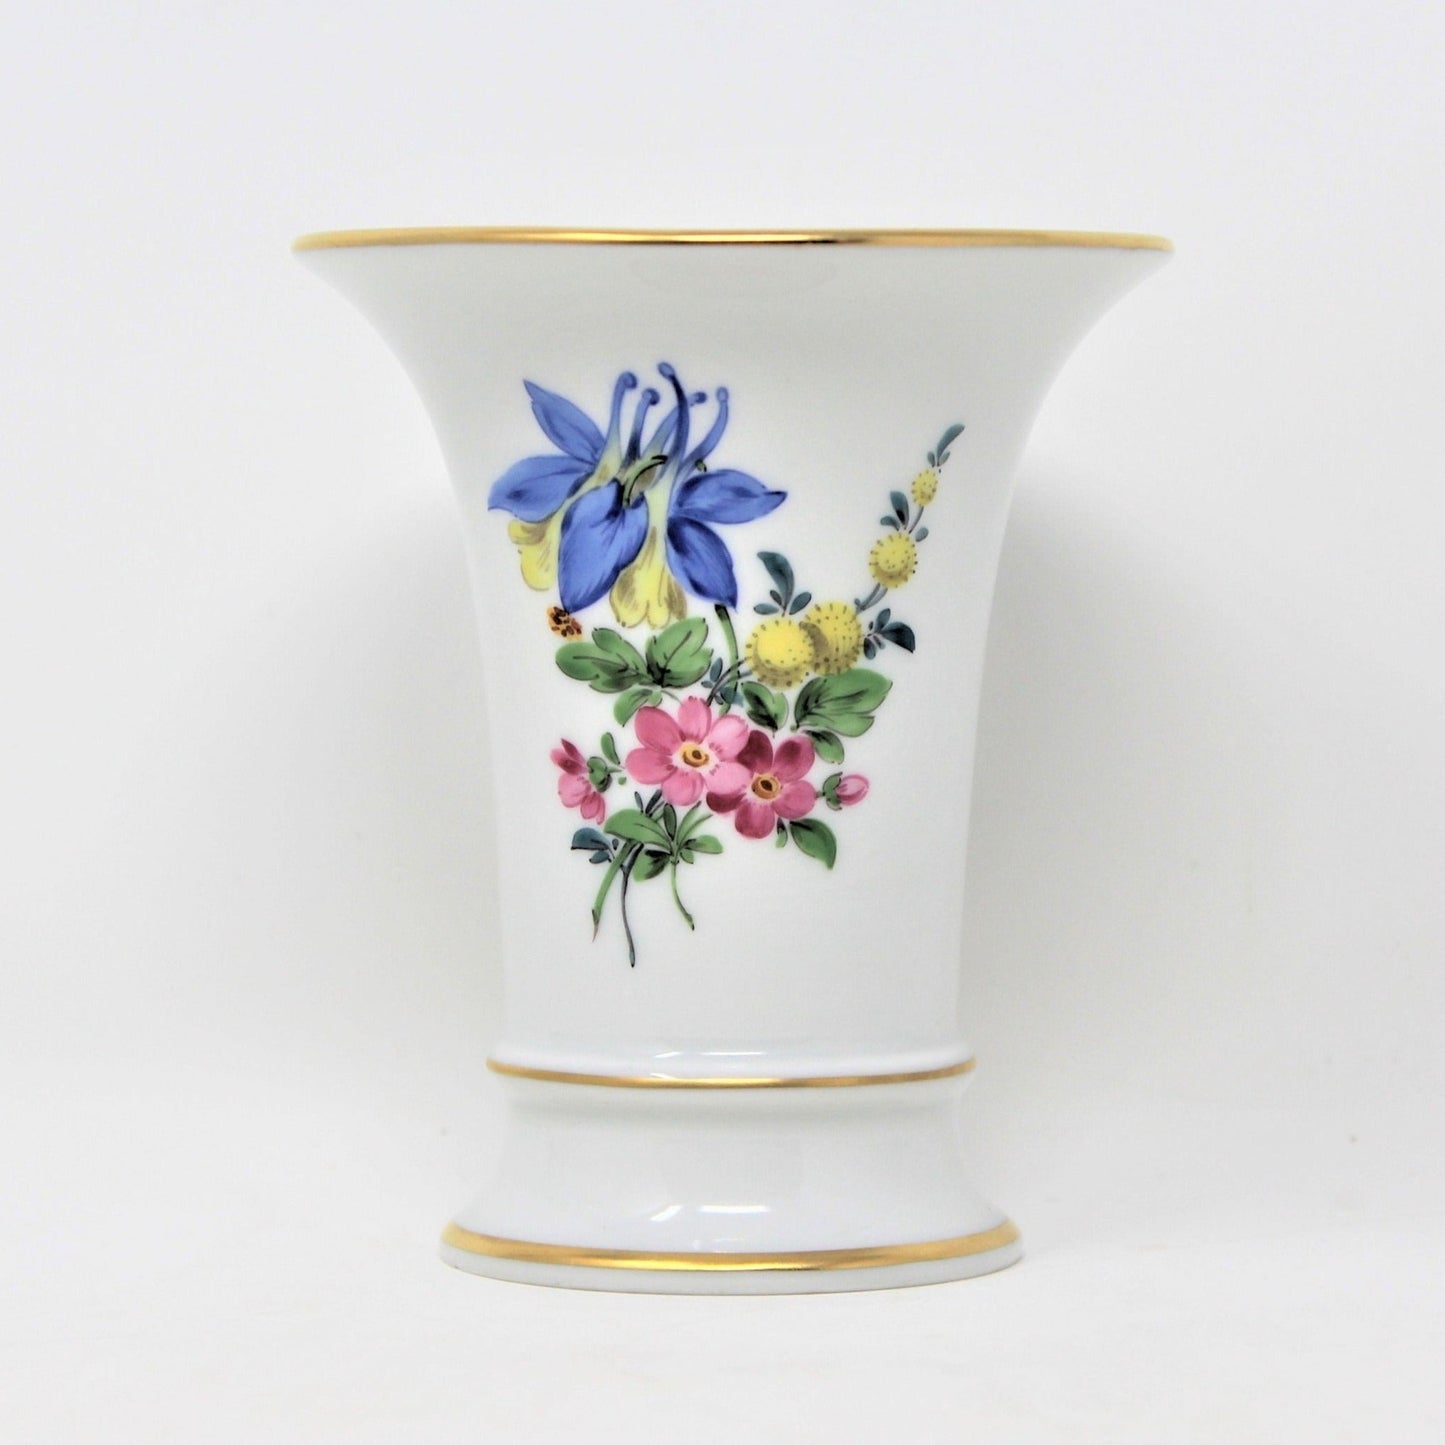 Vase, Trumpet / Funnel Vase, Meissen Porcelain, Floral 60110 Germany, Vintage